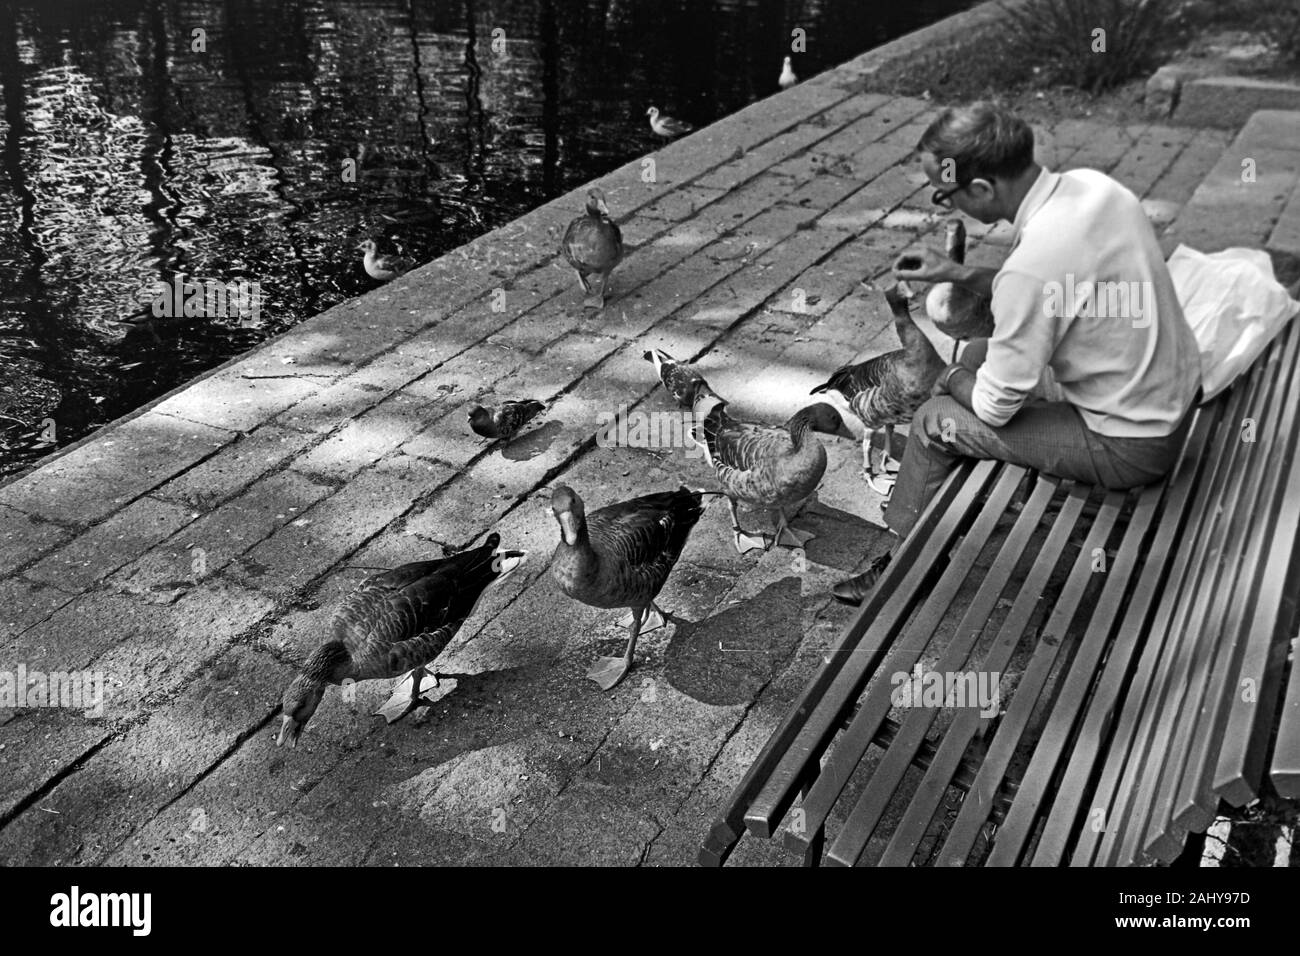 Gänse füttern im Schlosspark von Örebro, 1969. Feeding geese in the castle gardens in Örebro, 1969. Stock Photo